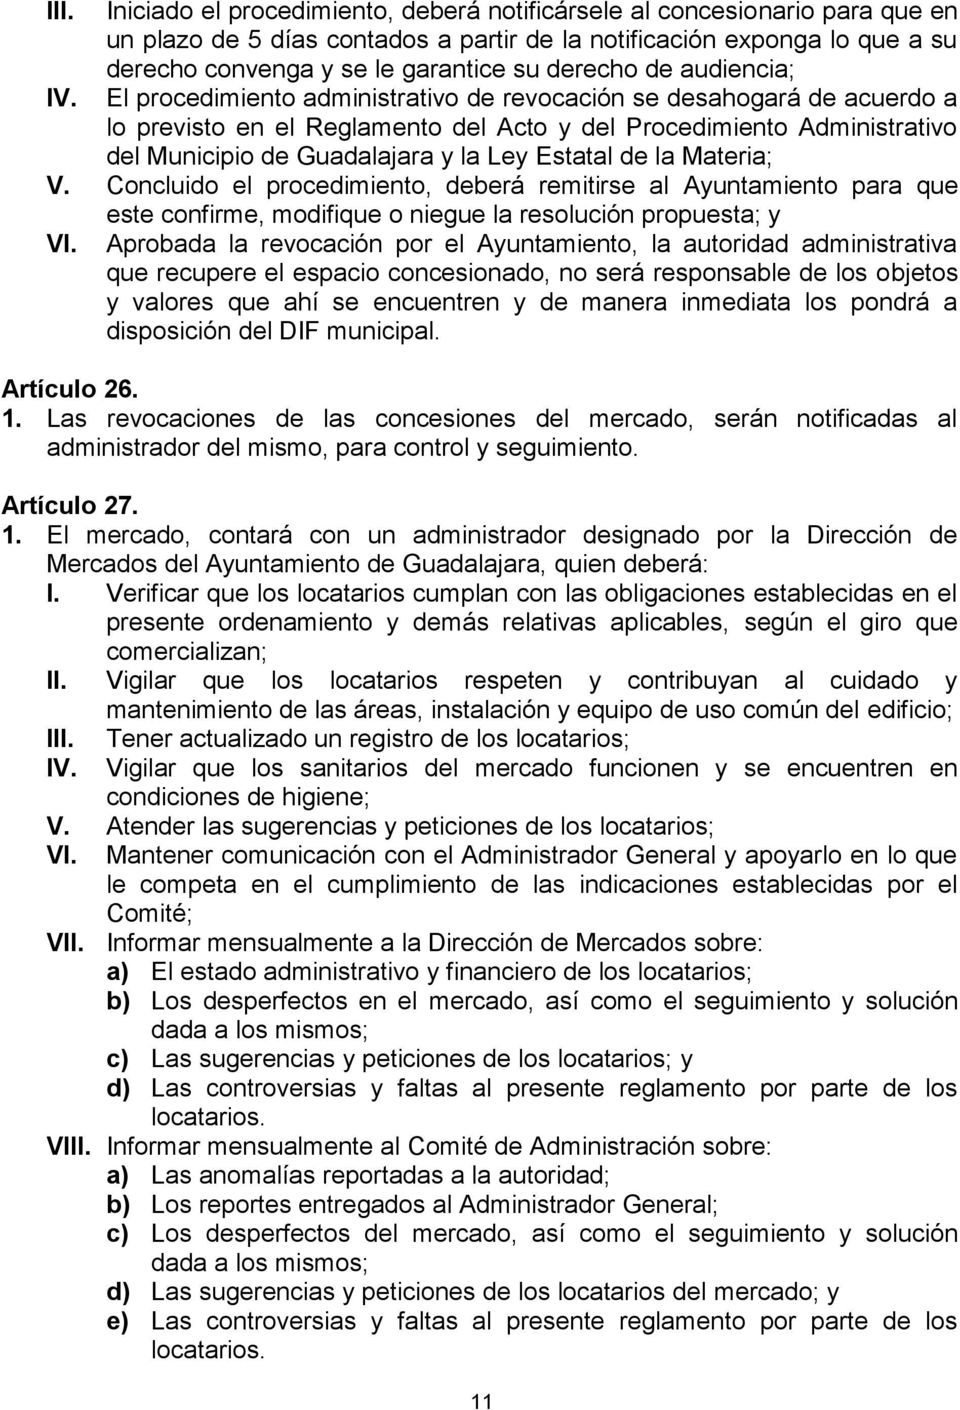 El procedimiento administrativo de revocación se desahogará de acuerdo a lo previsto en el Reglamento del Acto y del Procedimiento Administrativo del Municipio de Guadalajara y la Ley Estatal de la